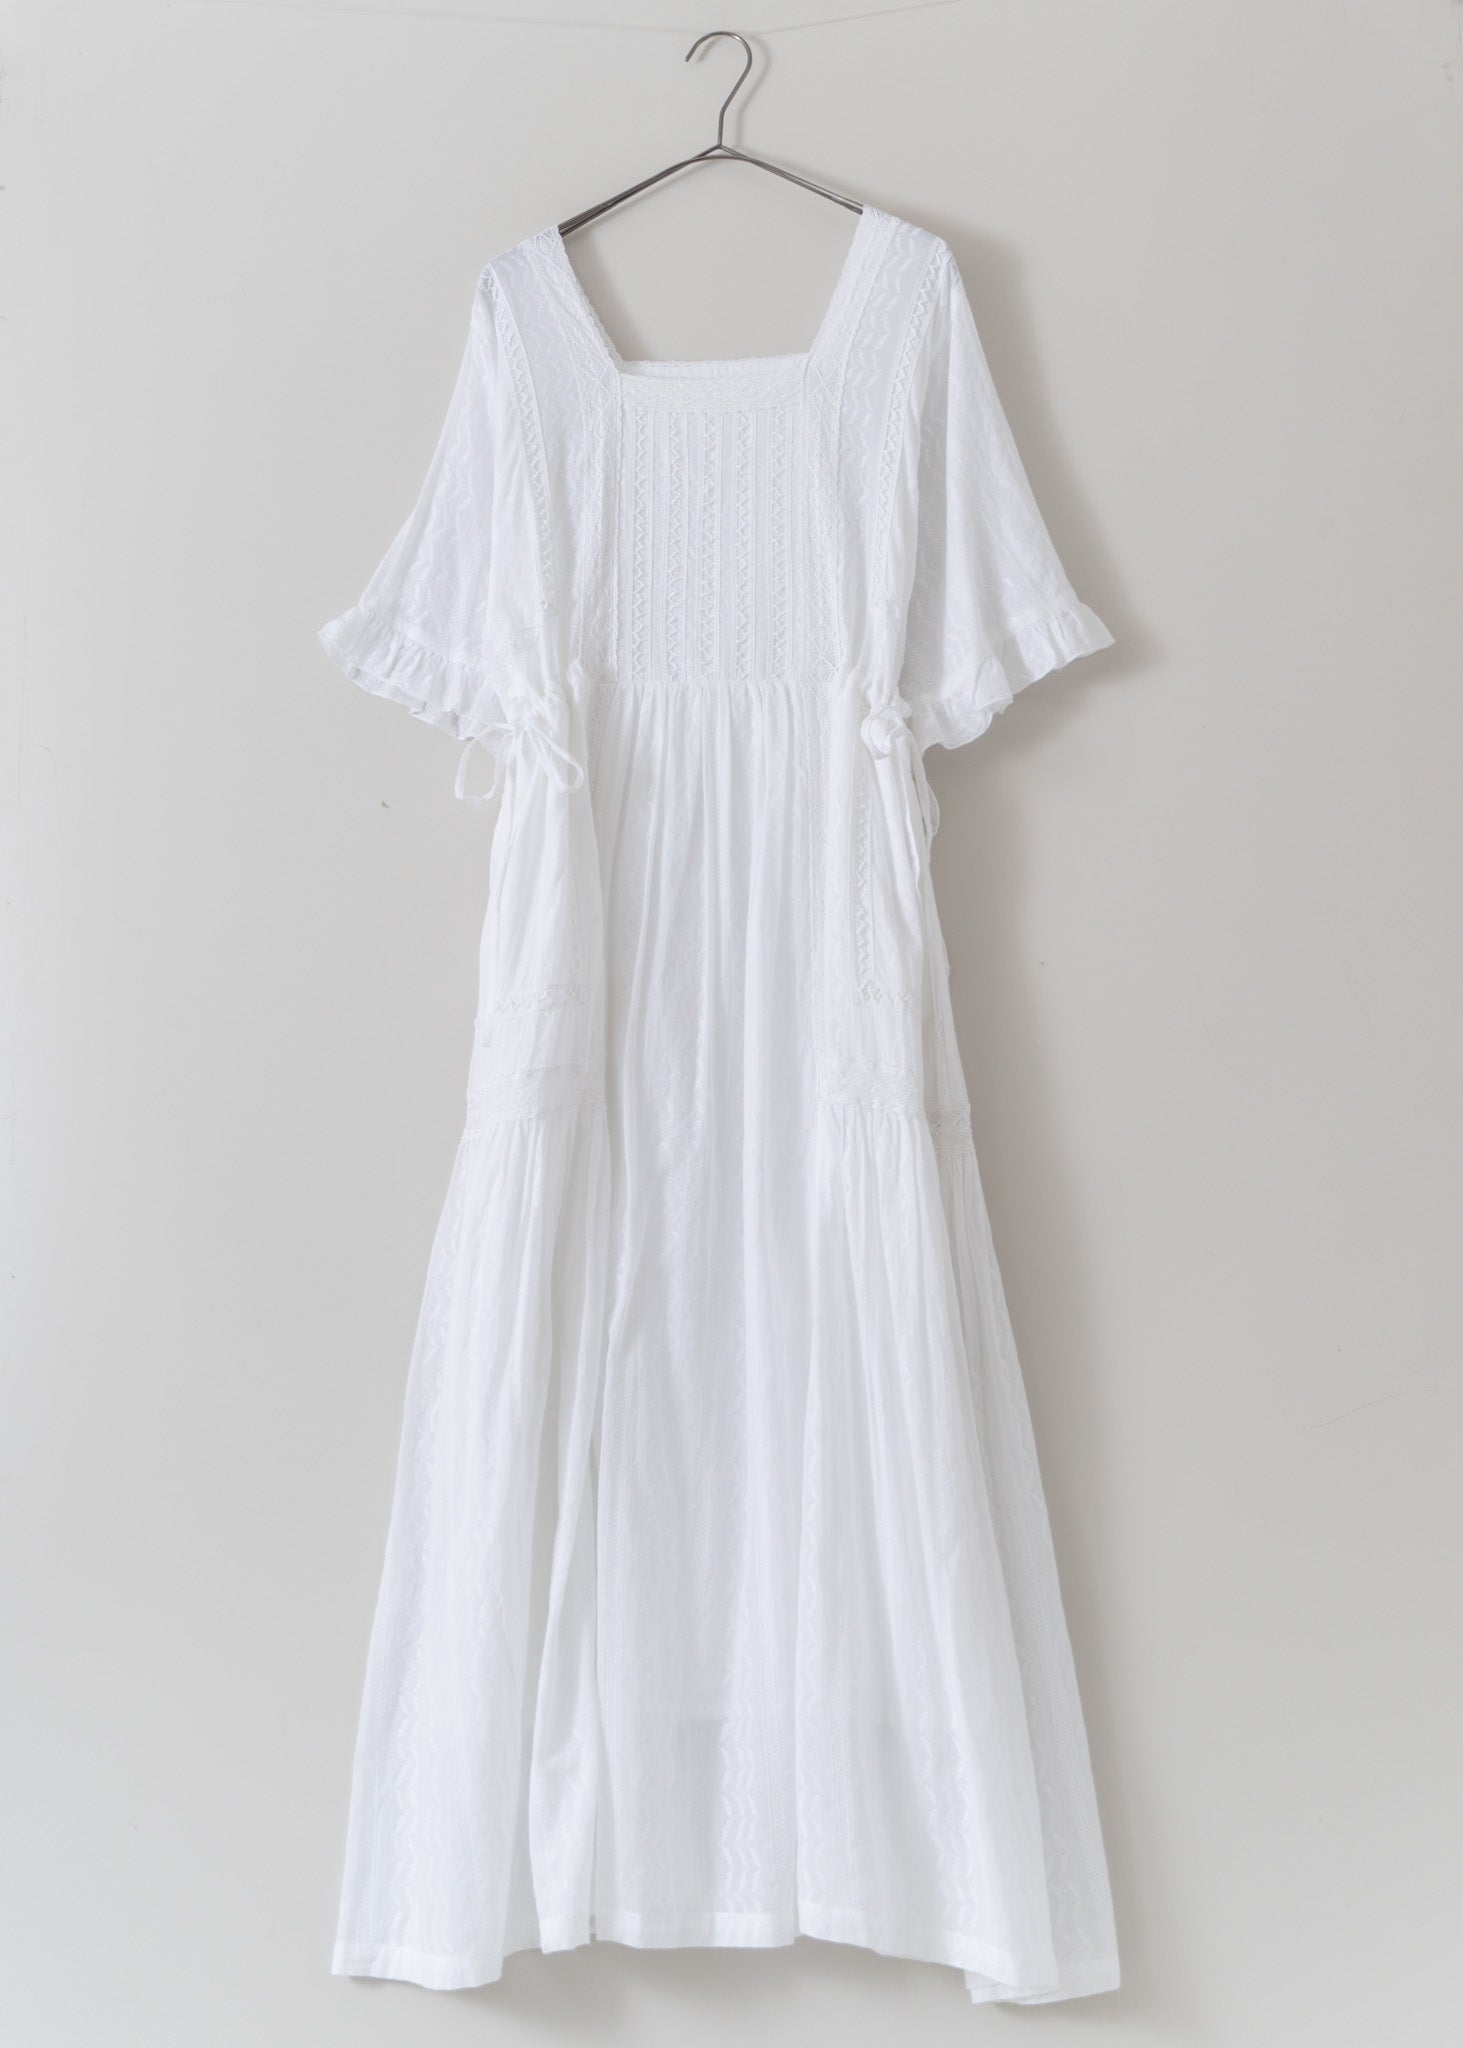 【3/27発売】Joint Lace Frill Sleeve Dress